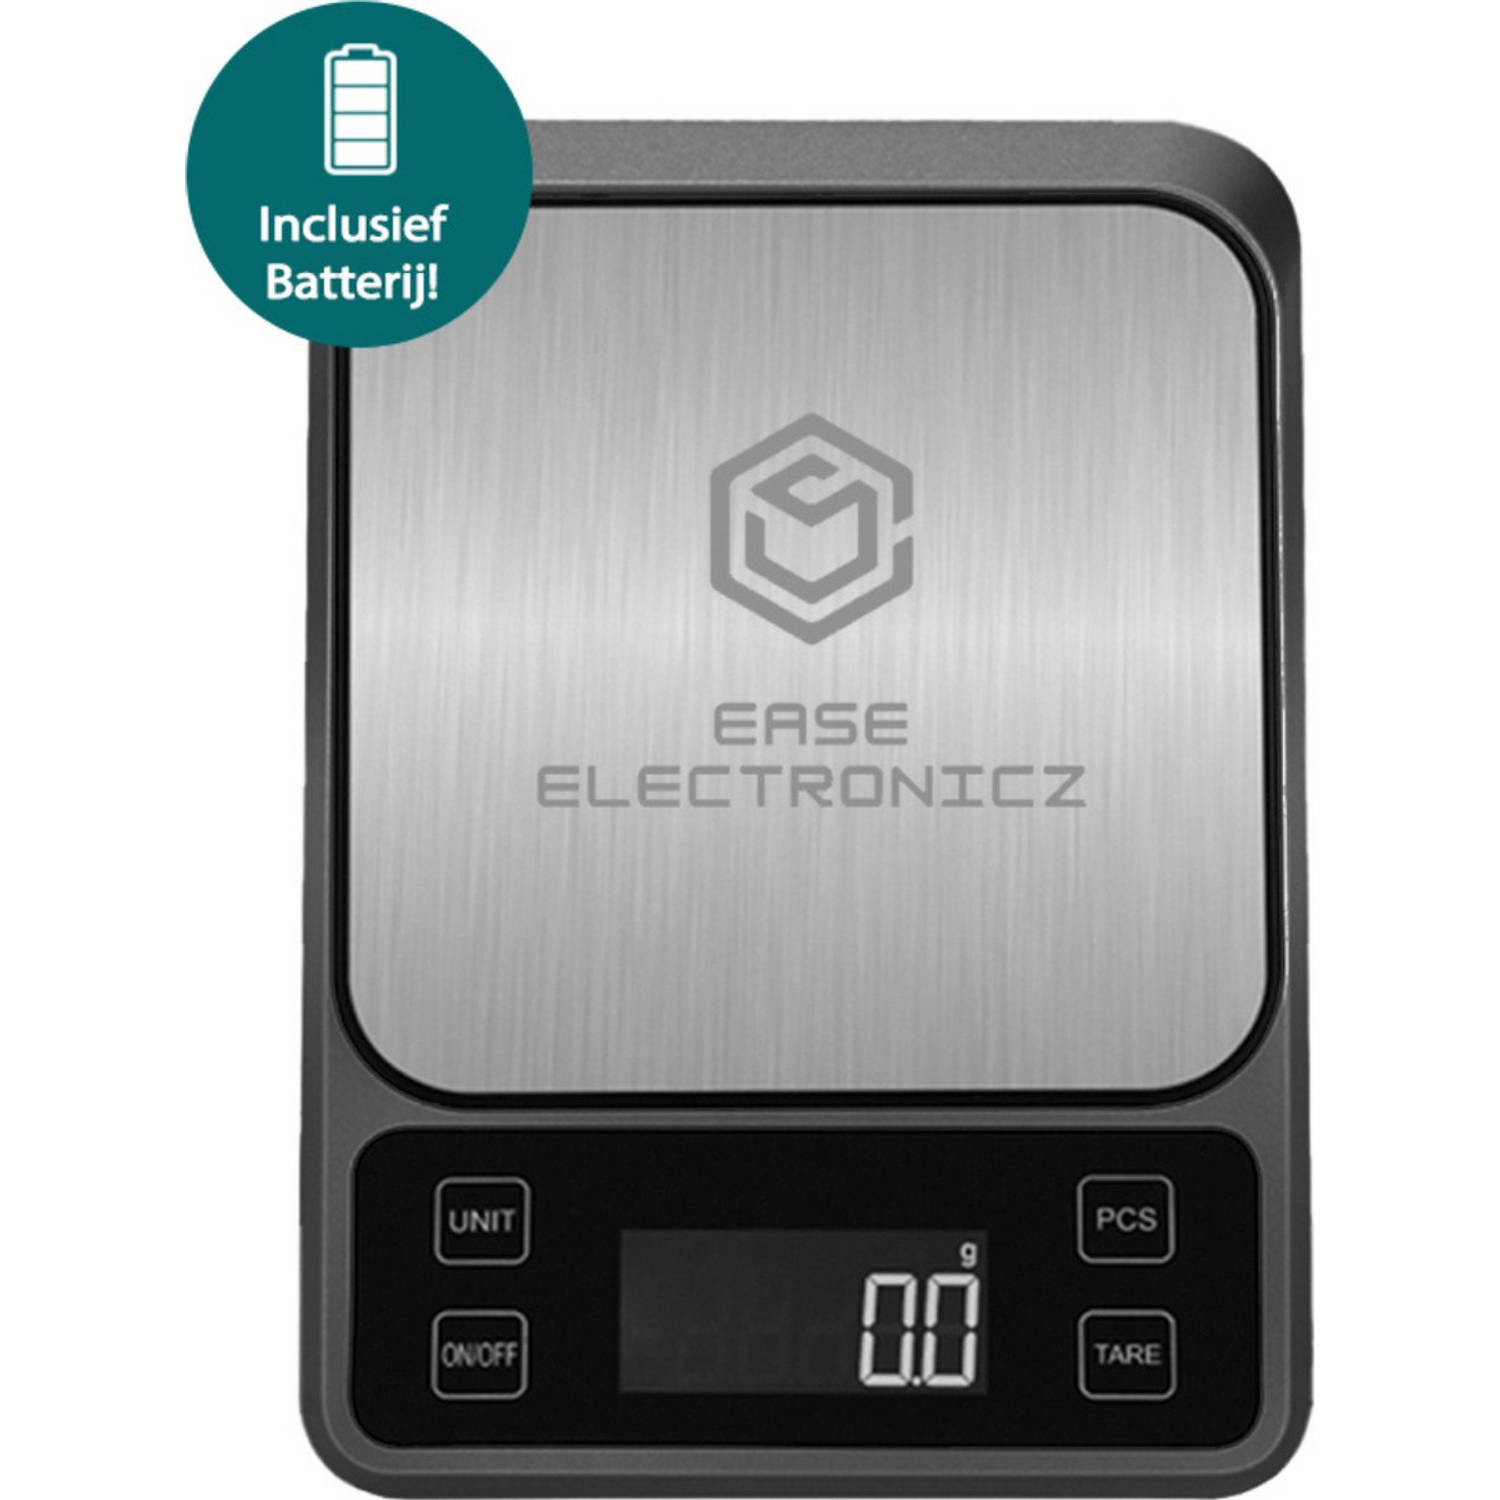 Ease Electronicz Digitale Precisie keukenweegschaal - 1gr tot 5 kg - Met Tarra Functie - Elektrisch - Inclusief Batterij